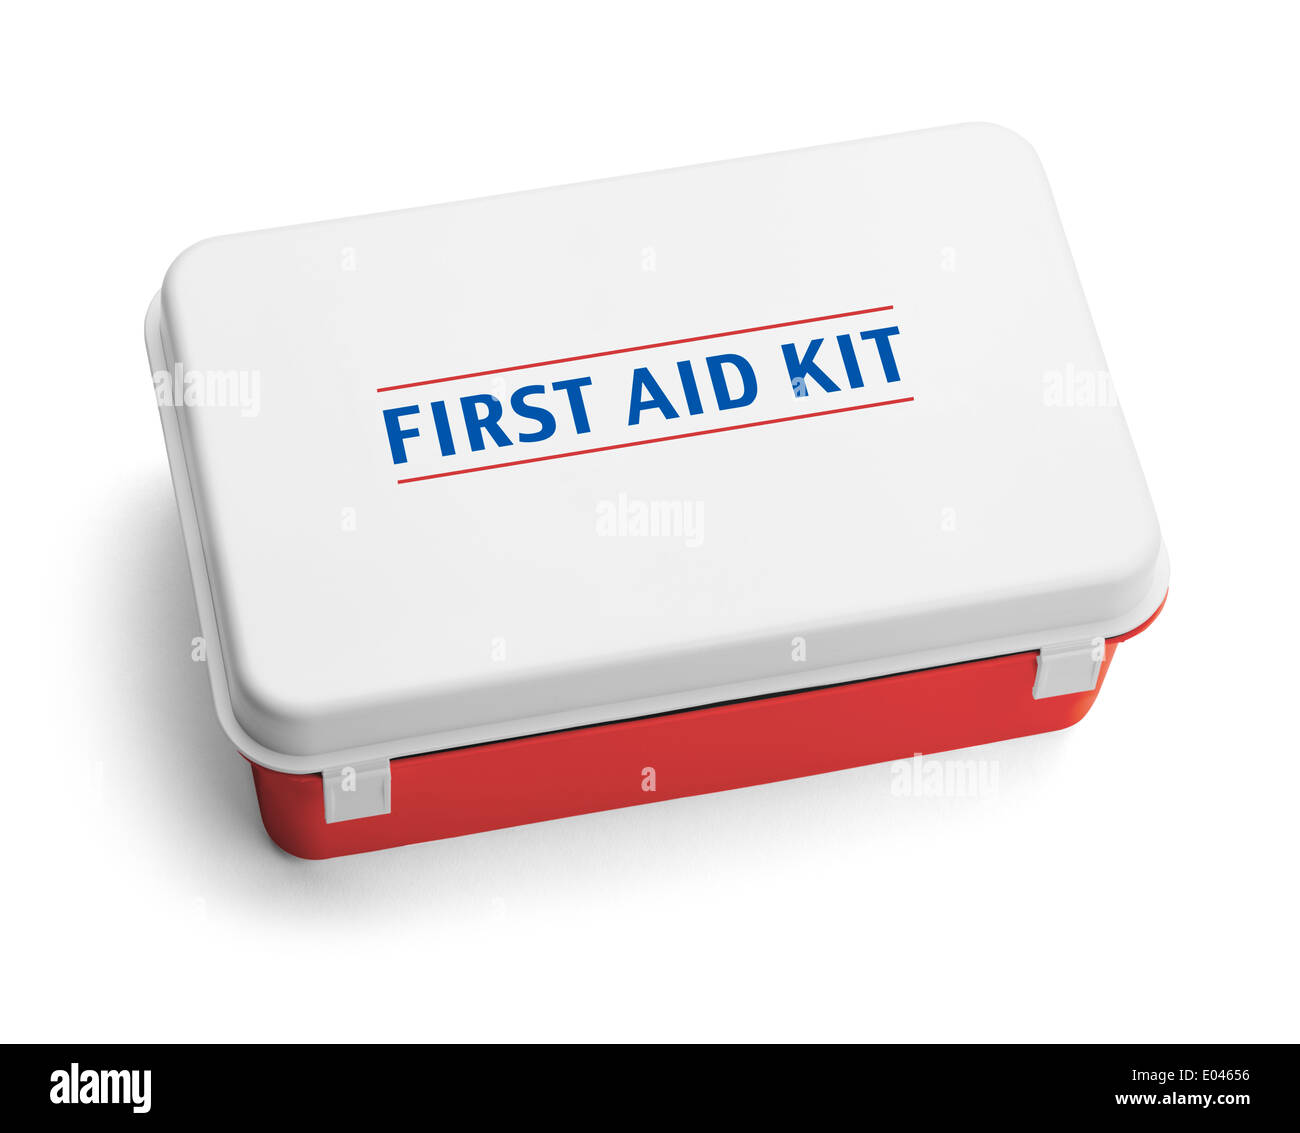 El plástico de la caja del kit de primeros auxilios, eso es rojo, blanco y azul. Aislado sobre fondo blanco. Foto de stock